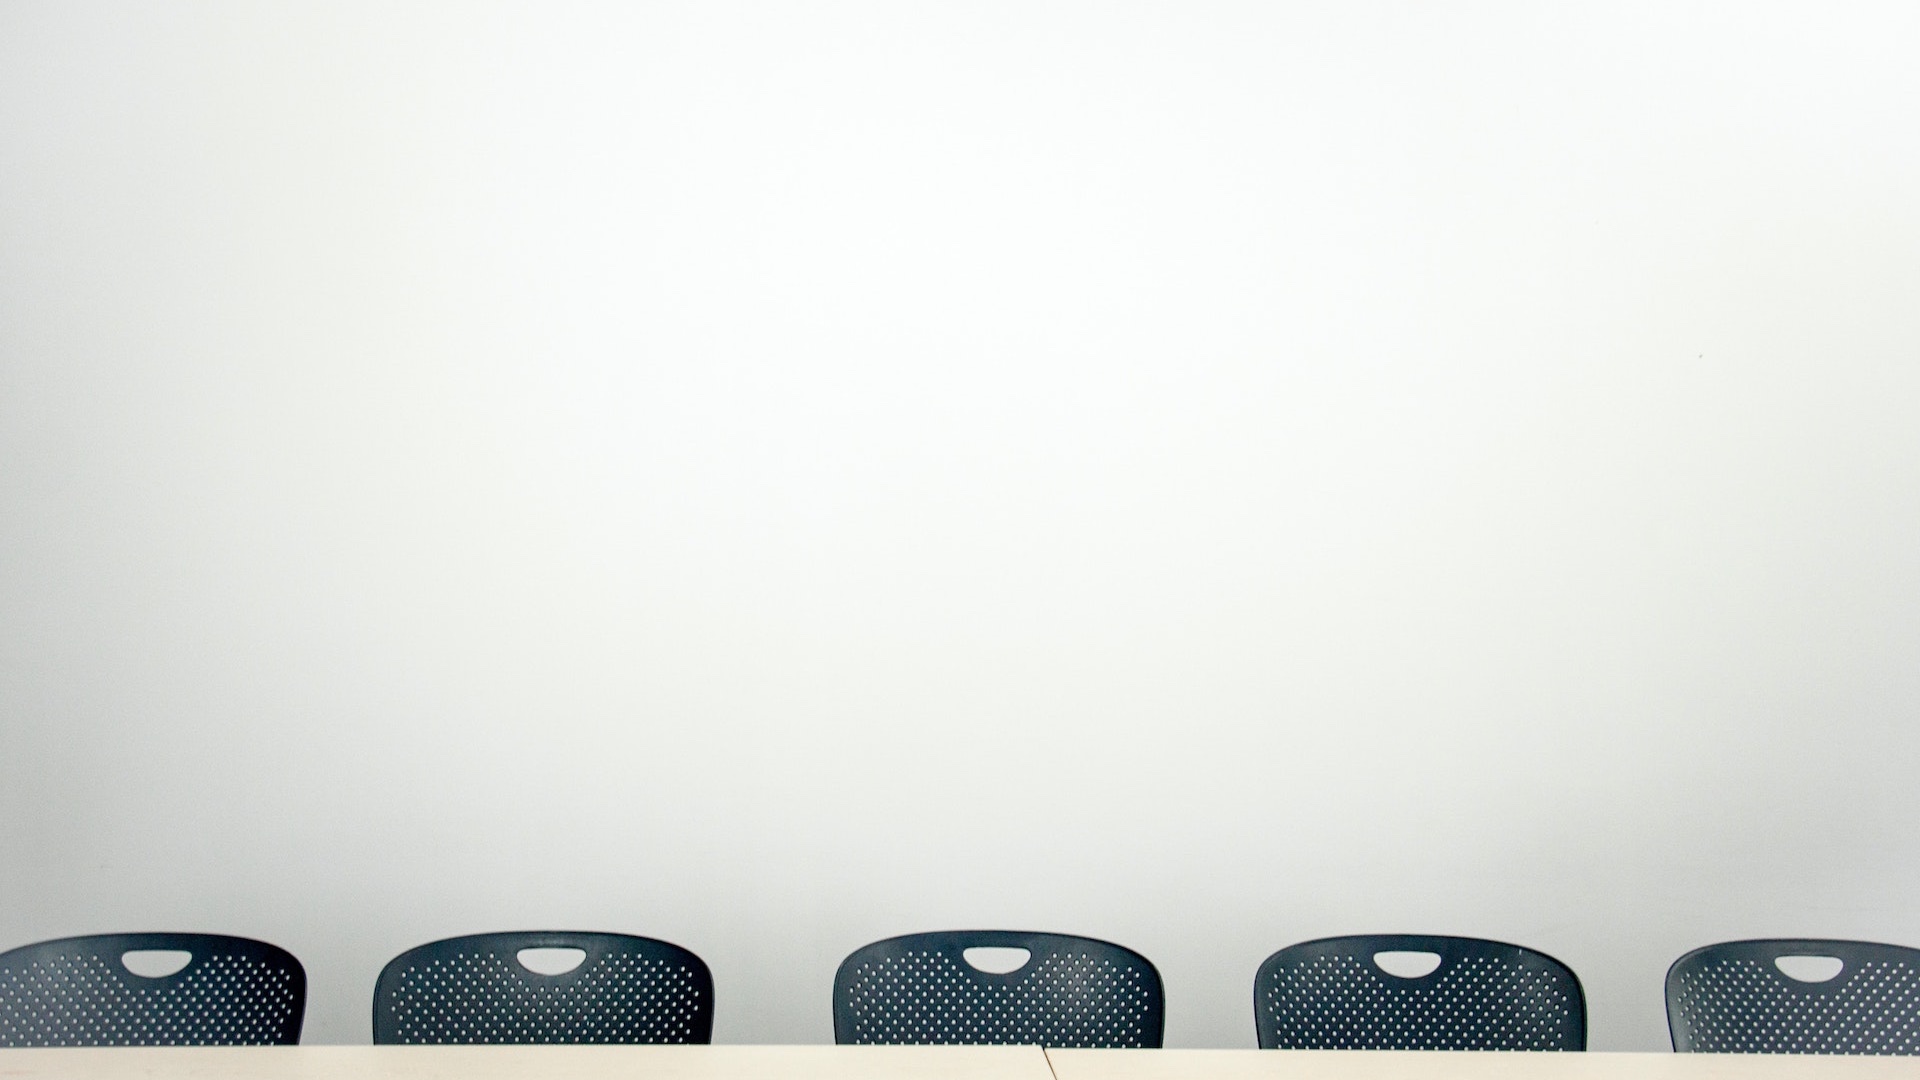 会議室と横並びの椅子の無料バーチャル背景素材